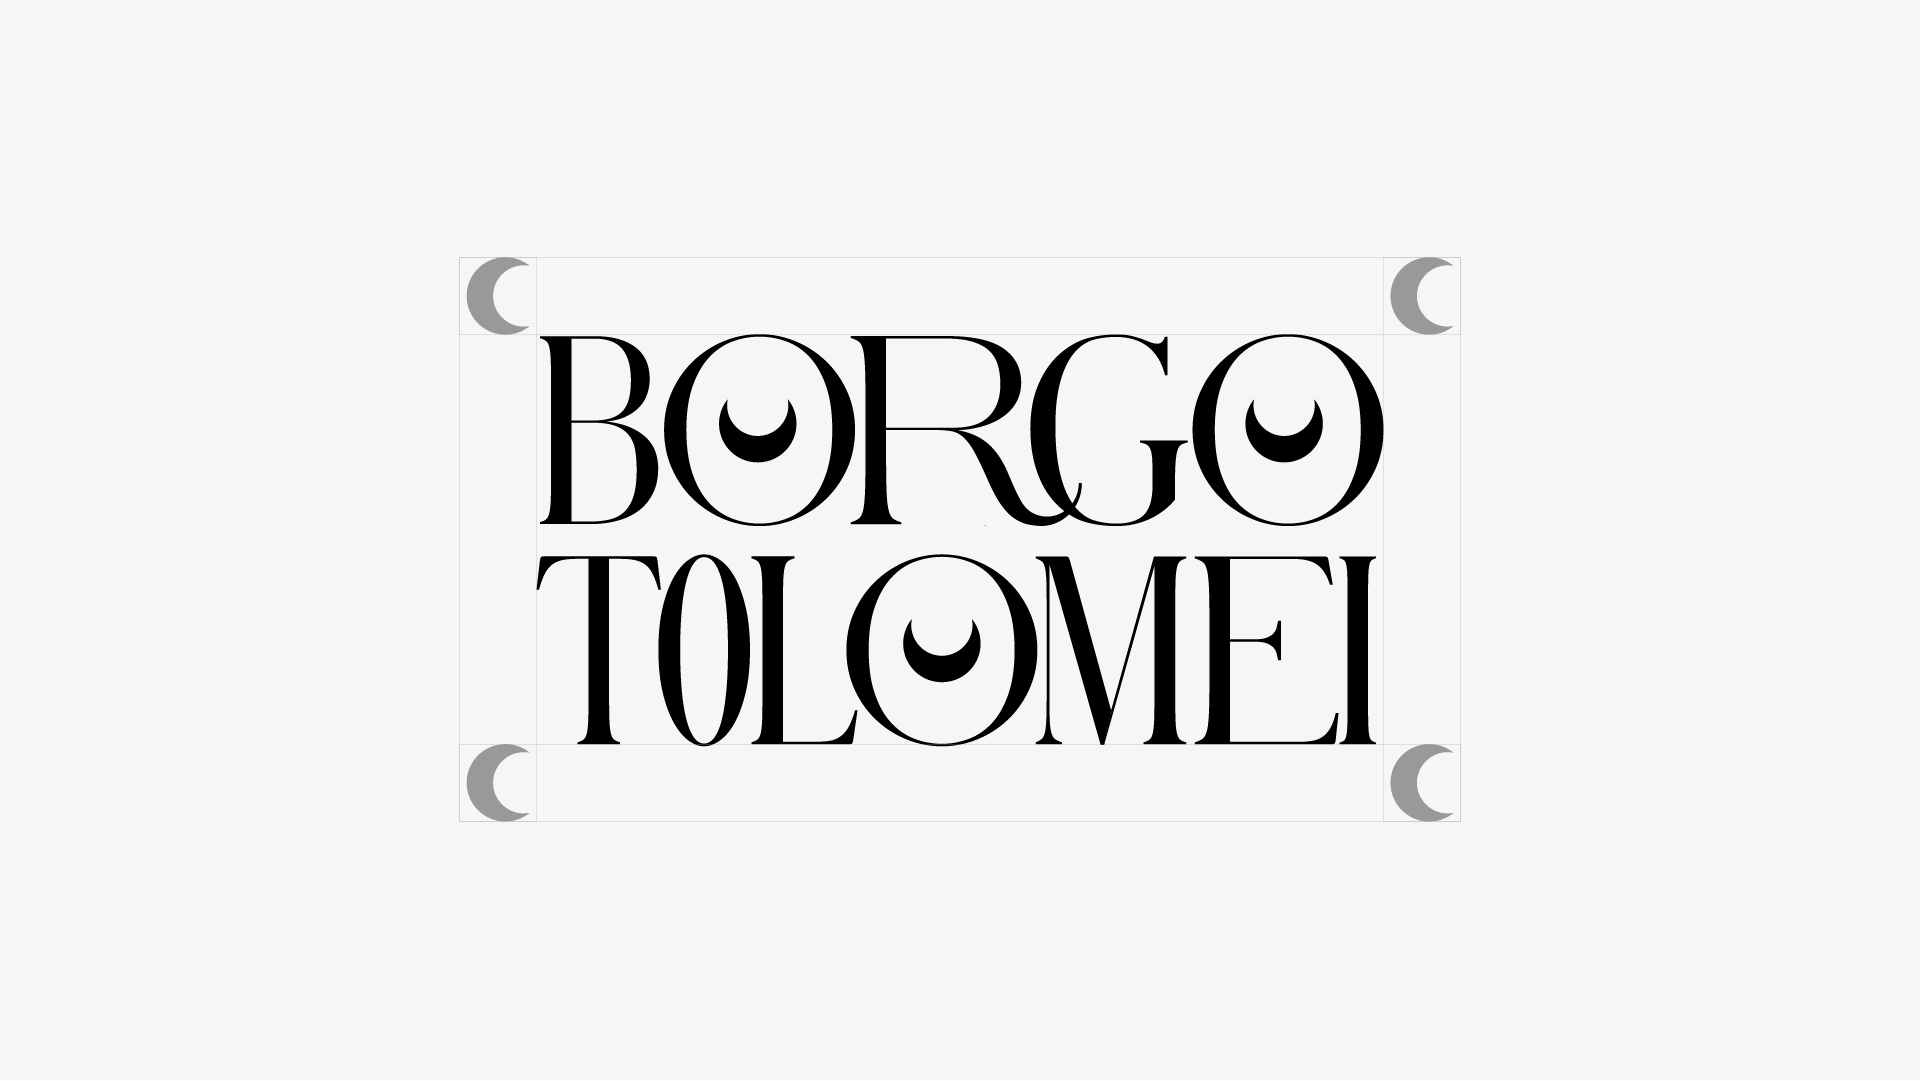 Borgo Tolomei - Cappelli Identity Design